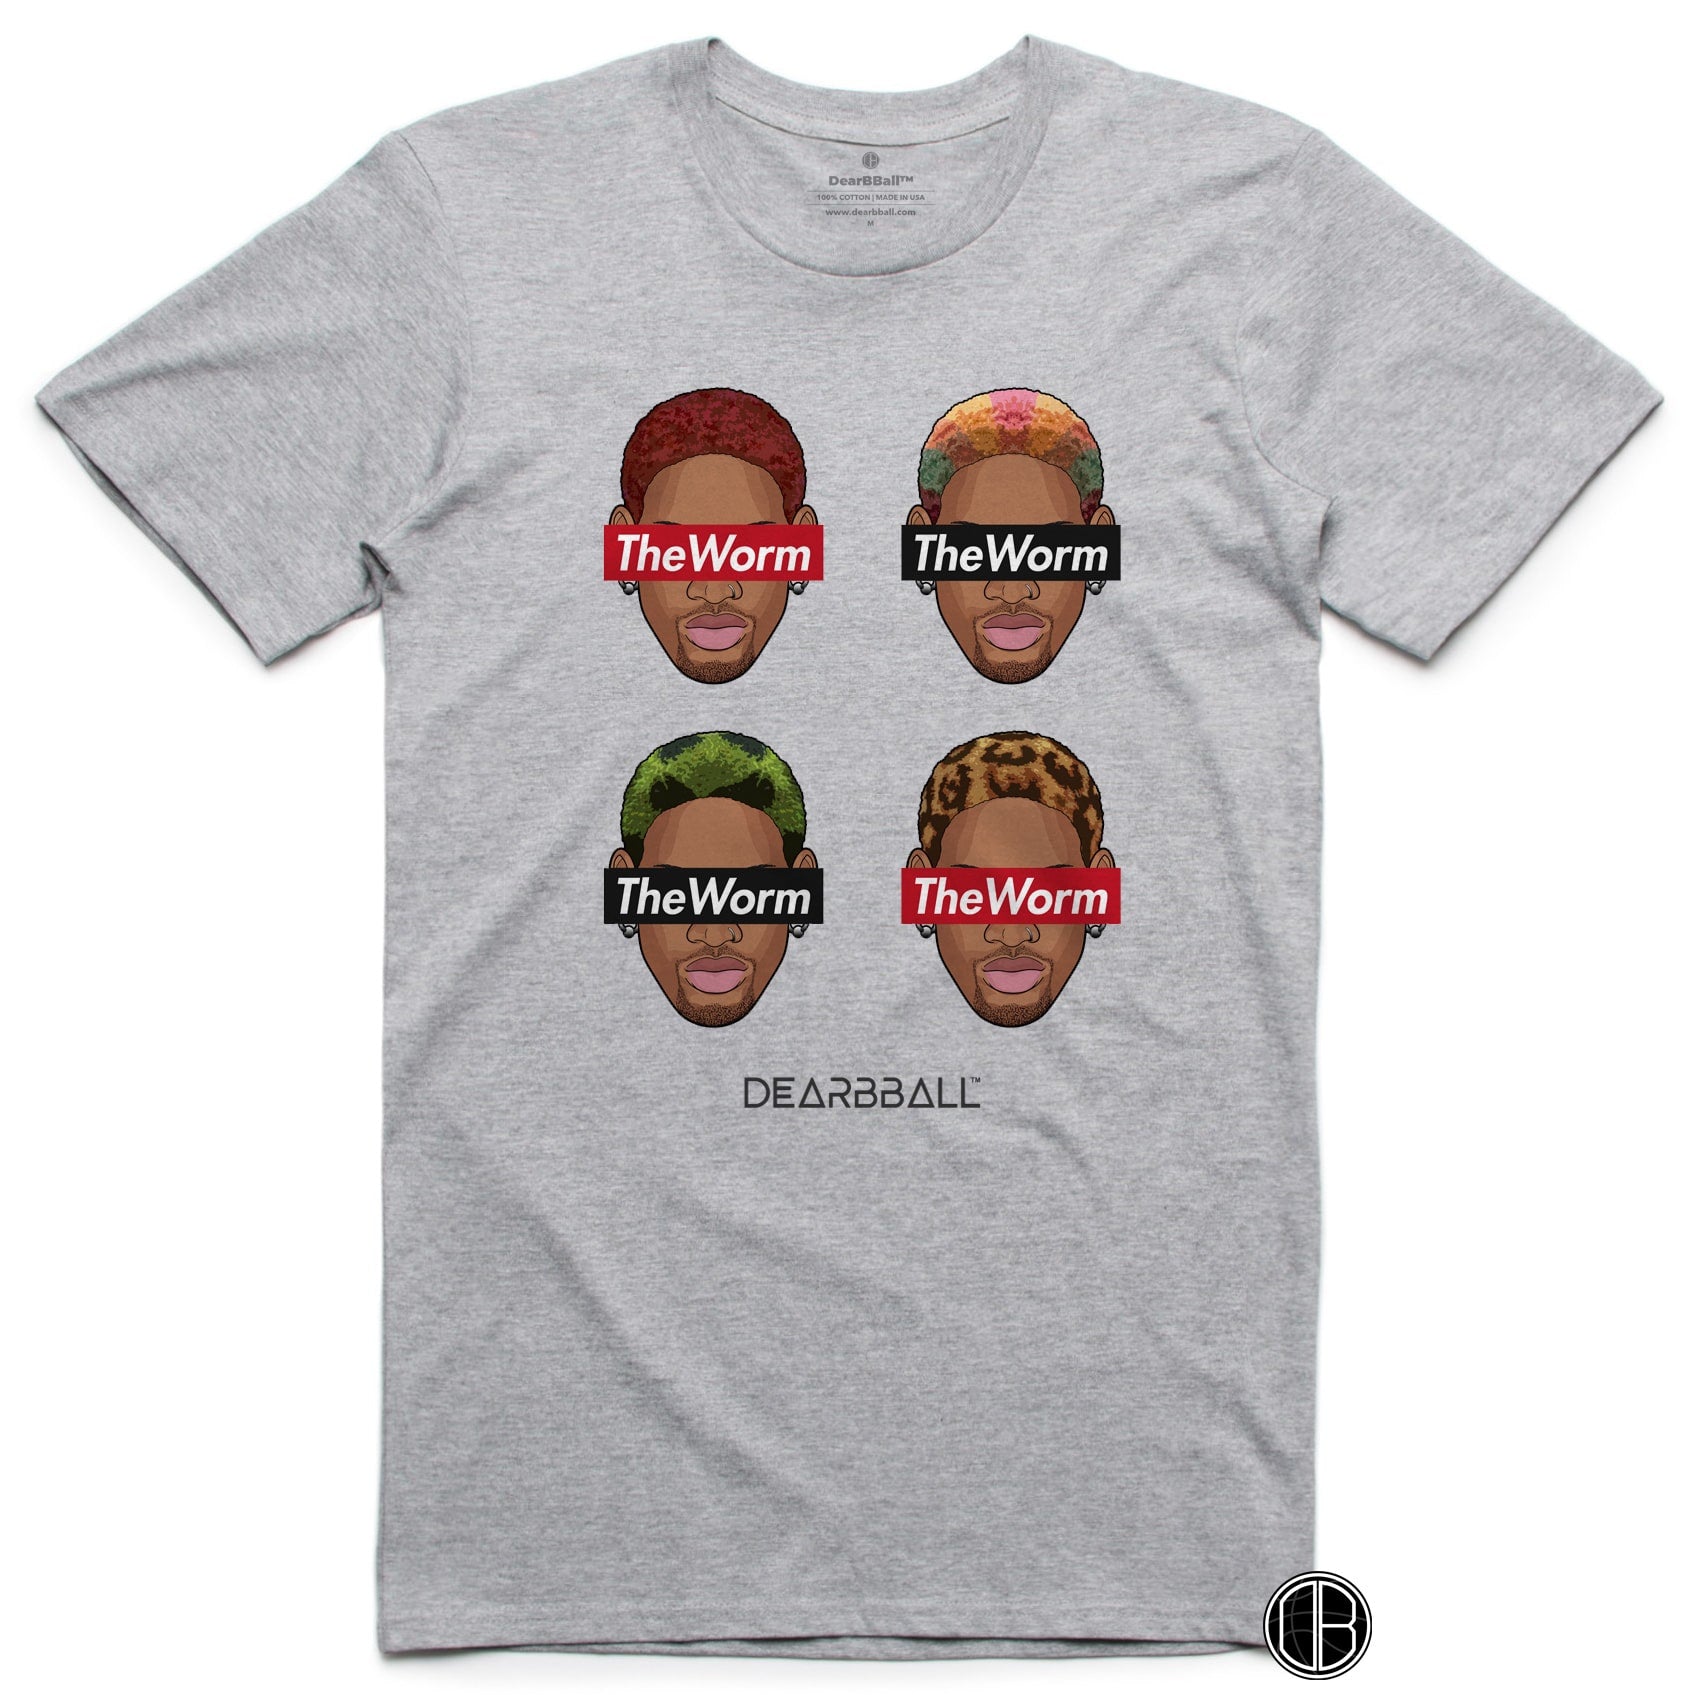 Camiseta DearBBall - Edición de estilo WORM 4 Hairs